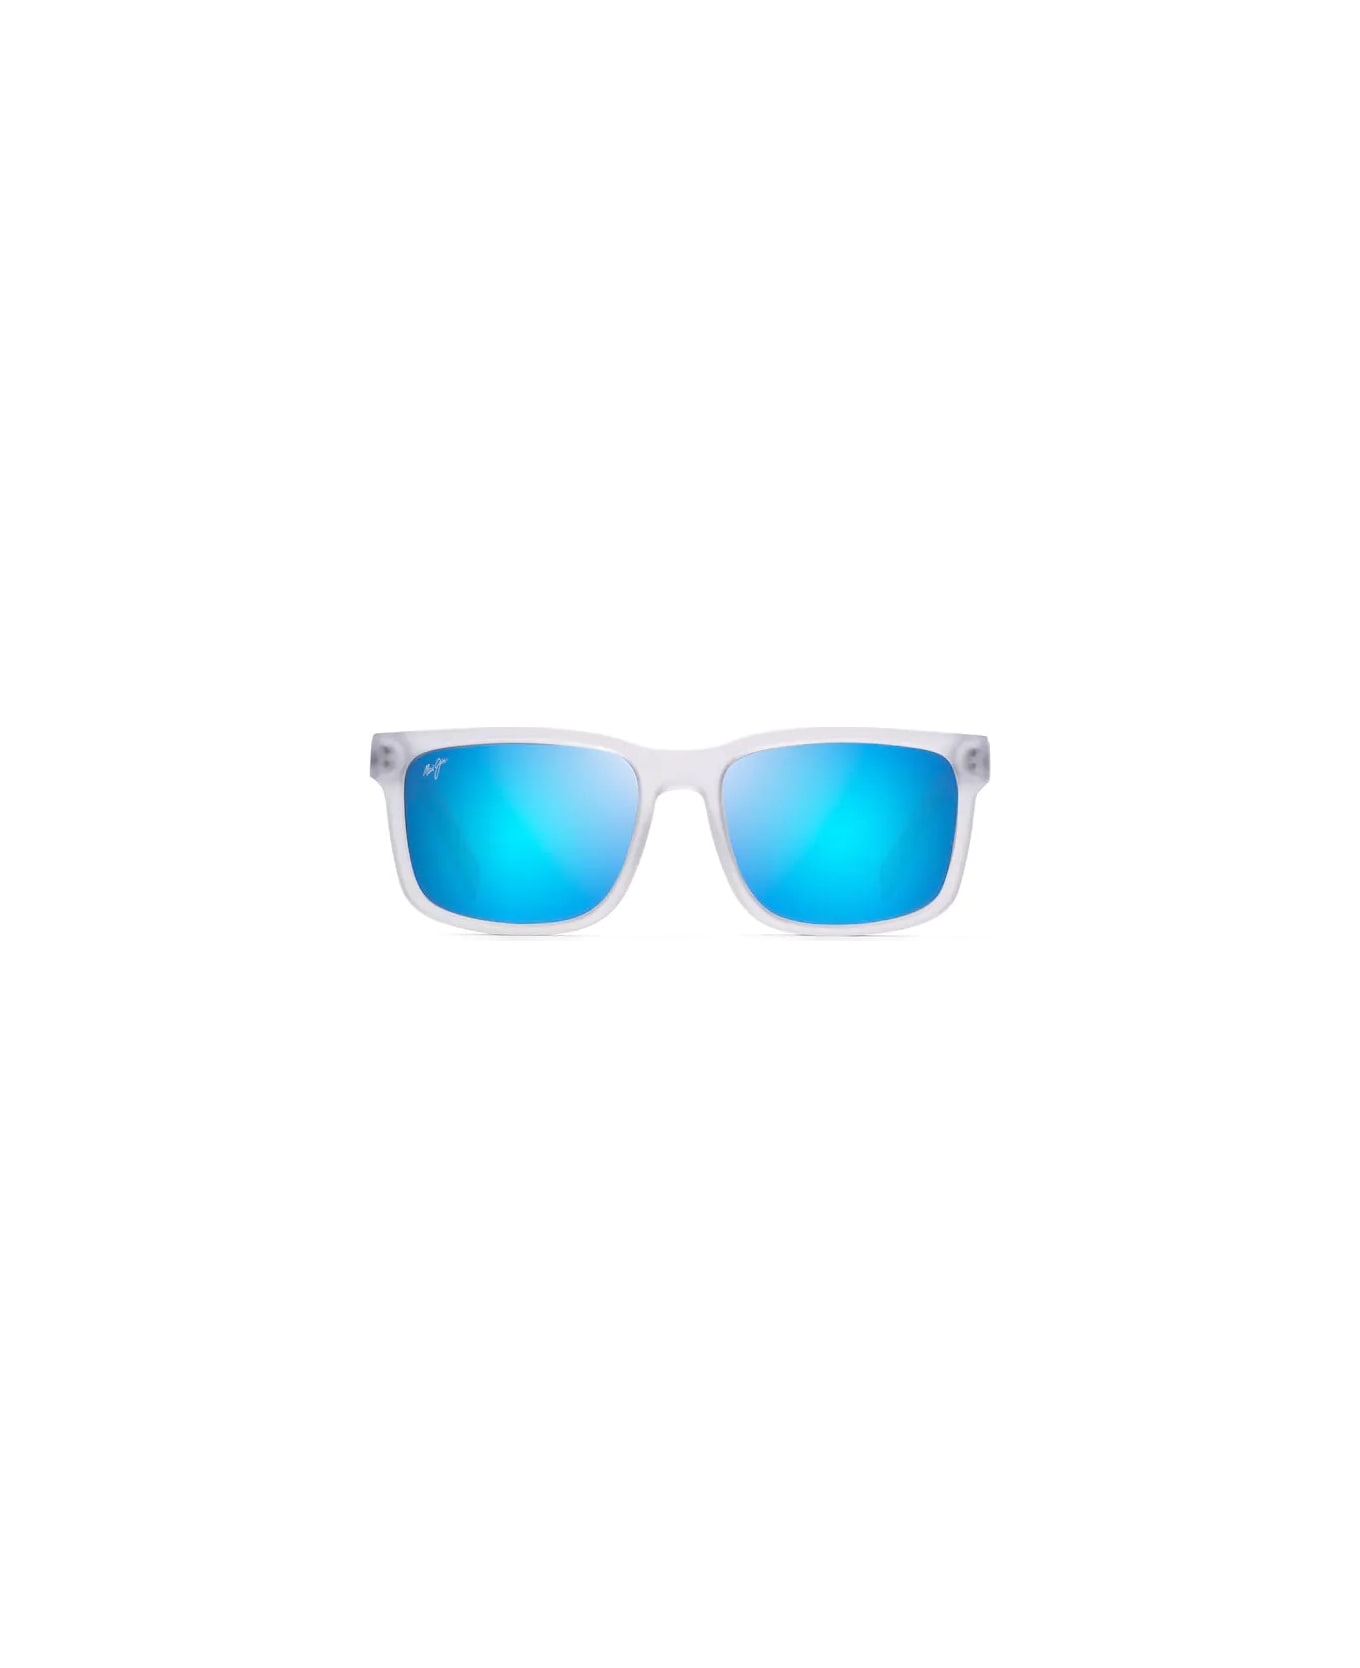 Maui Jim Stone Shack 862 05 Sunglasses - Cristallo opaco サングラス